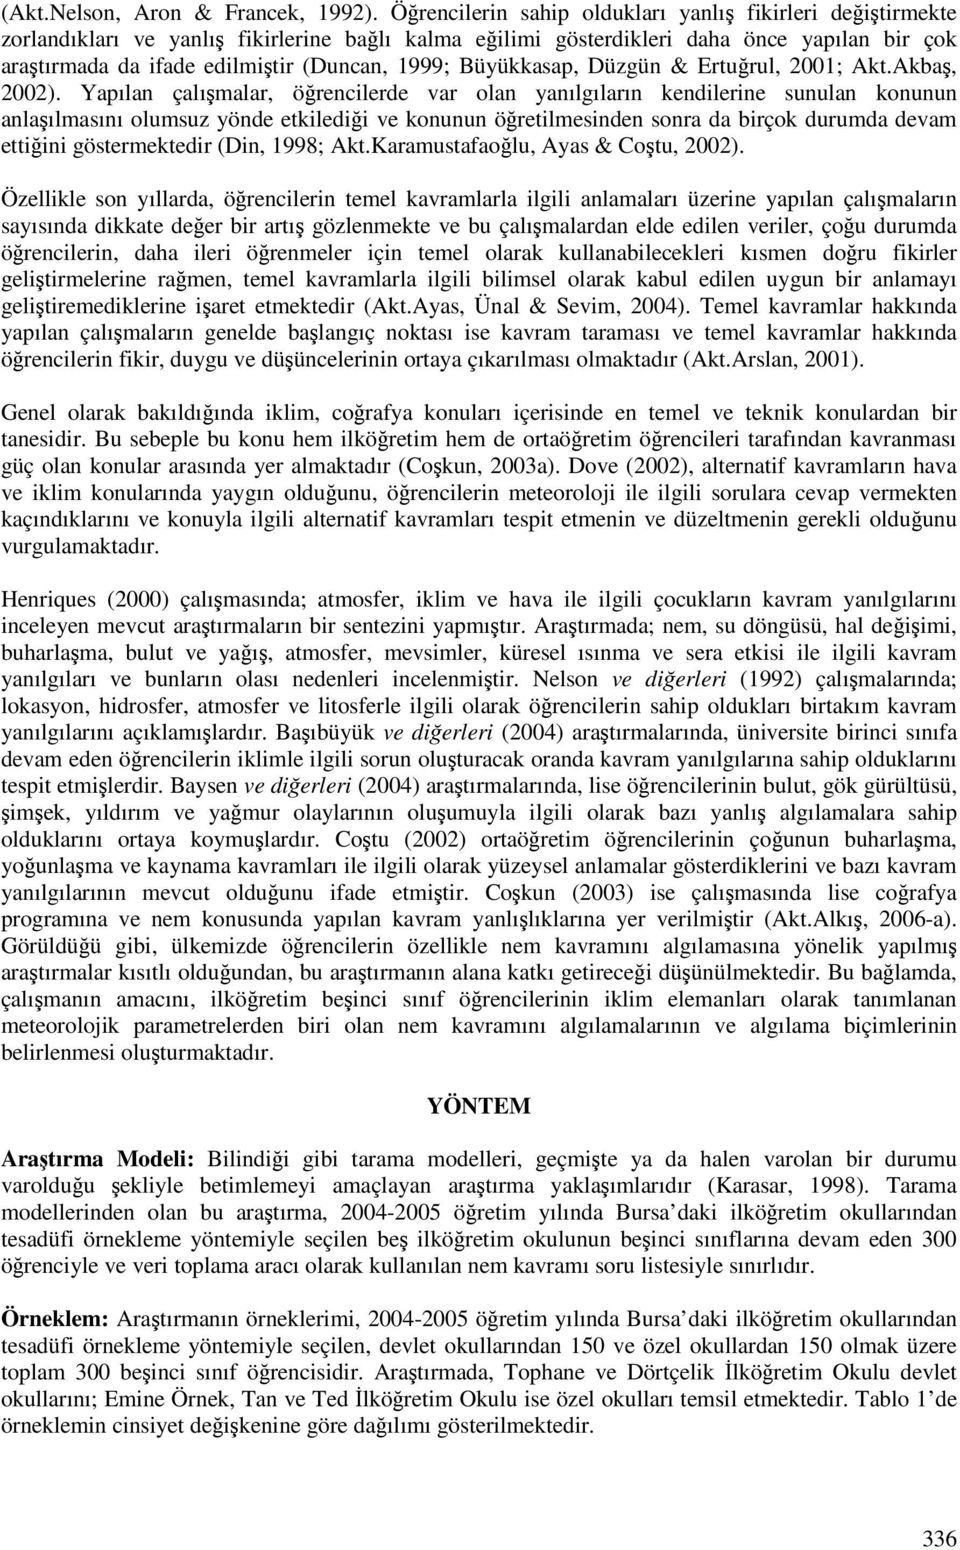 Büyükkasap, Düzgün & Erturul, 2001; Akt.Akba, 2002).